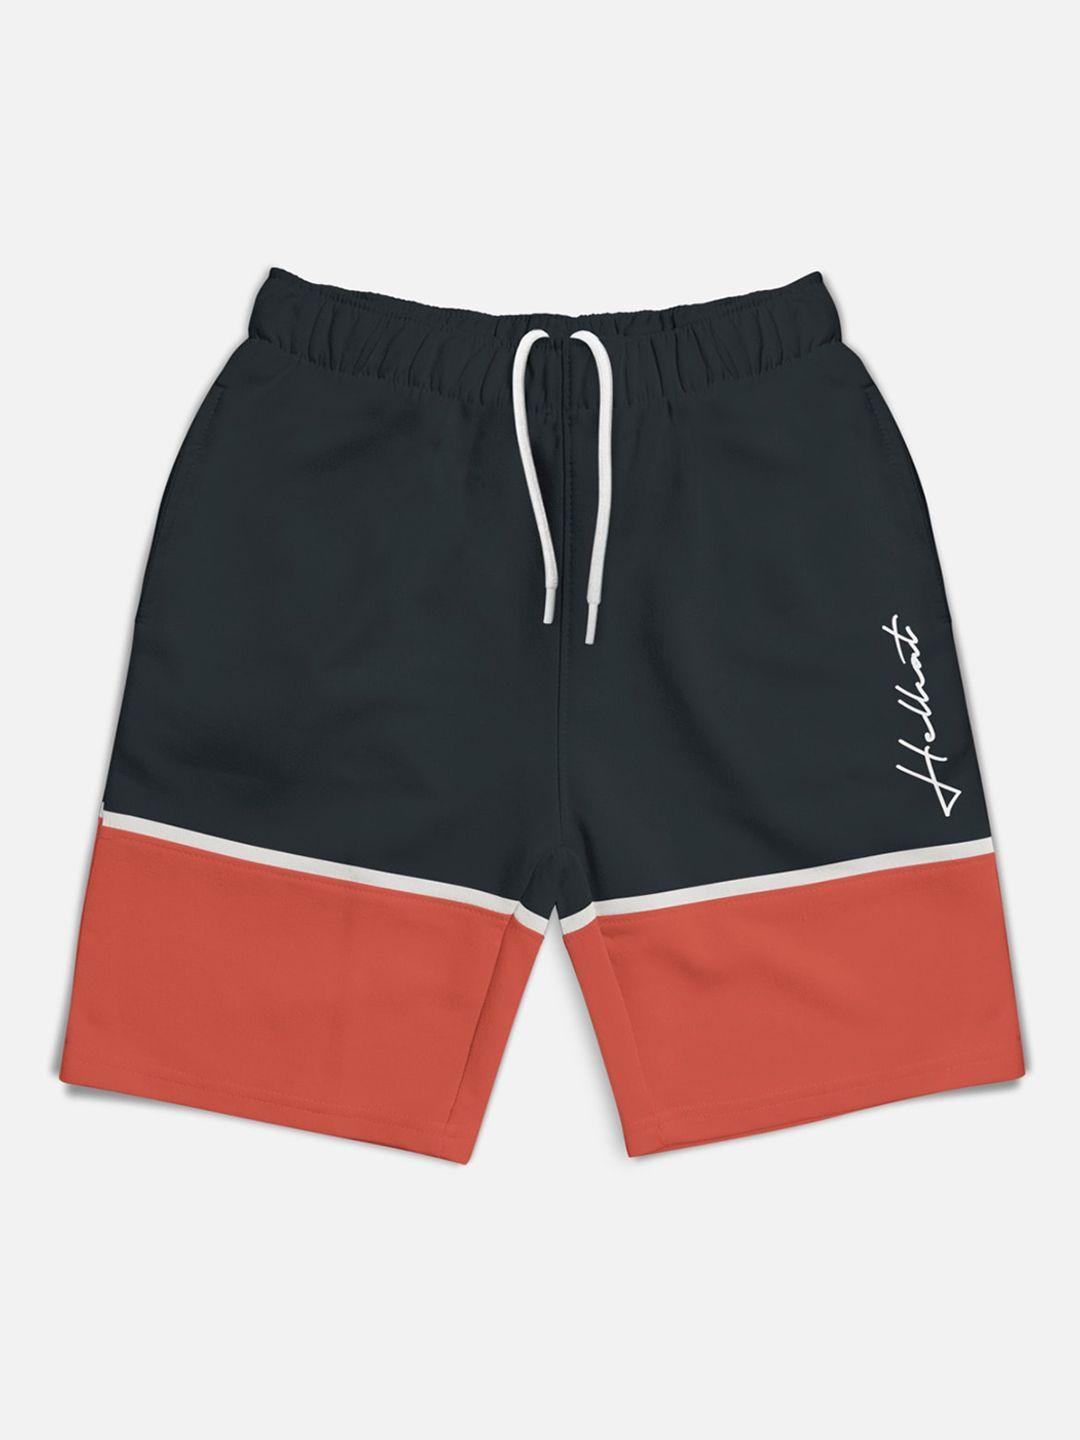 hellcat boys colourblocked sports shorts technology